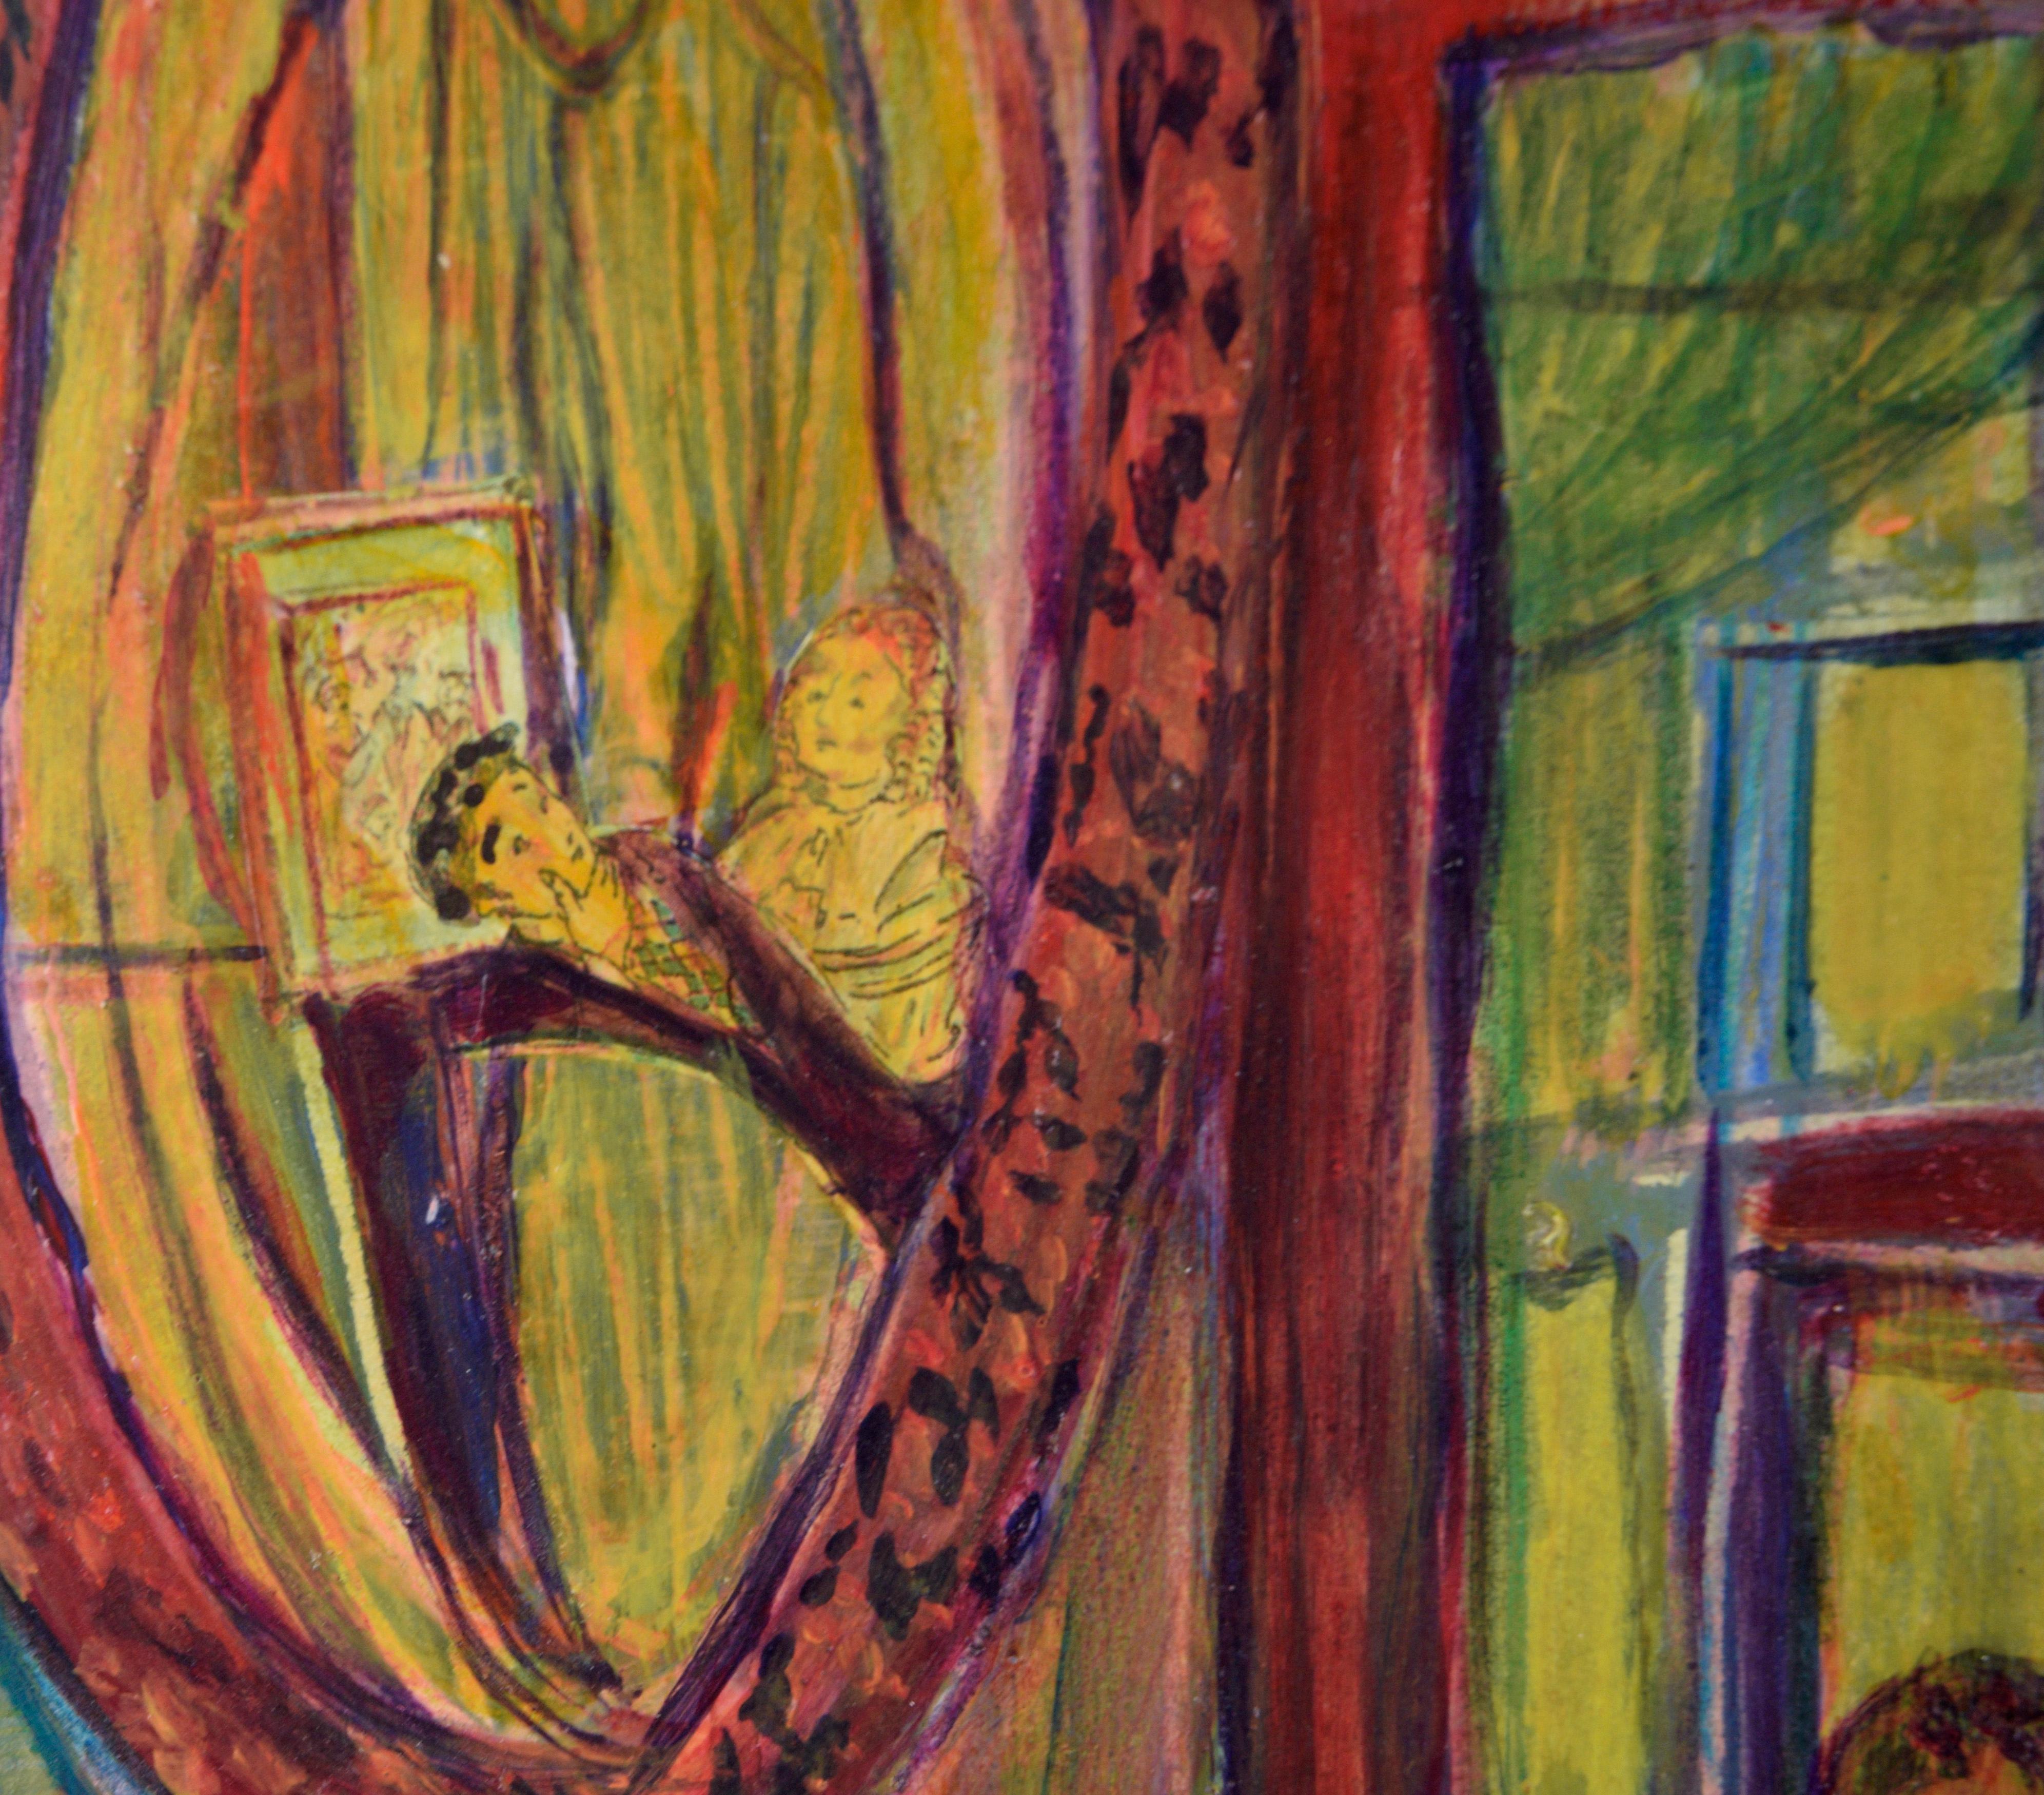 Intérieur abstrait psychédélique avec miroir à l'huile sur papier

Intérieur abstrait Moody de Jennie T. Rafton (américaine, née en 1925). L'intérieur d'une maison est représenté avec un grand miroir rond. Dans le reflet du miroir, il y a des